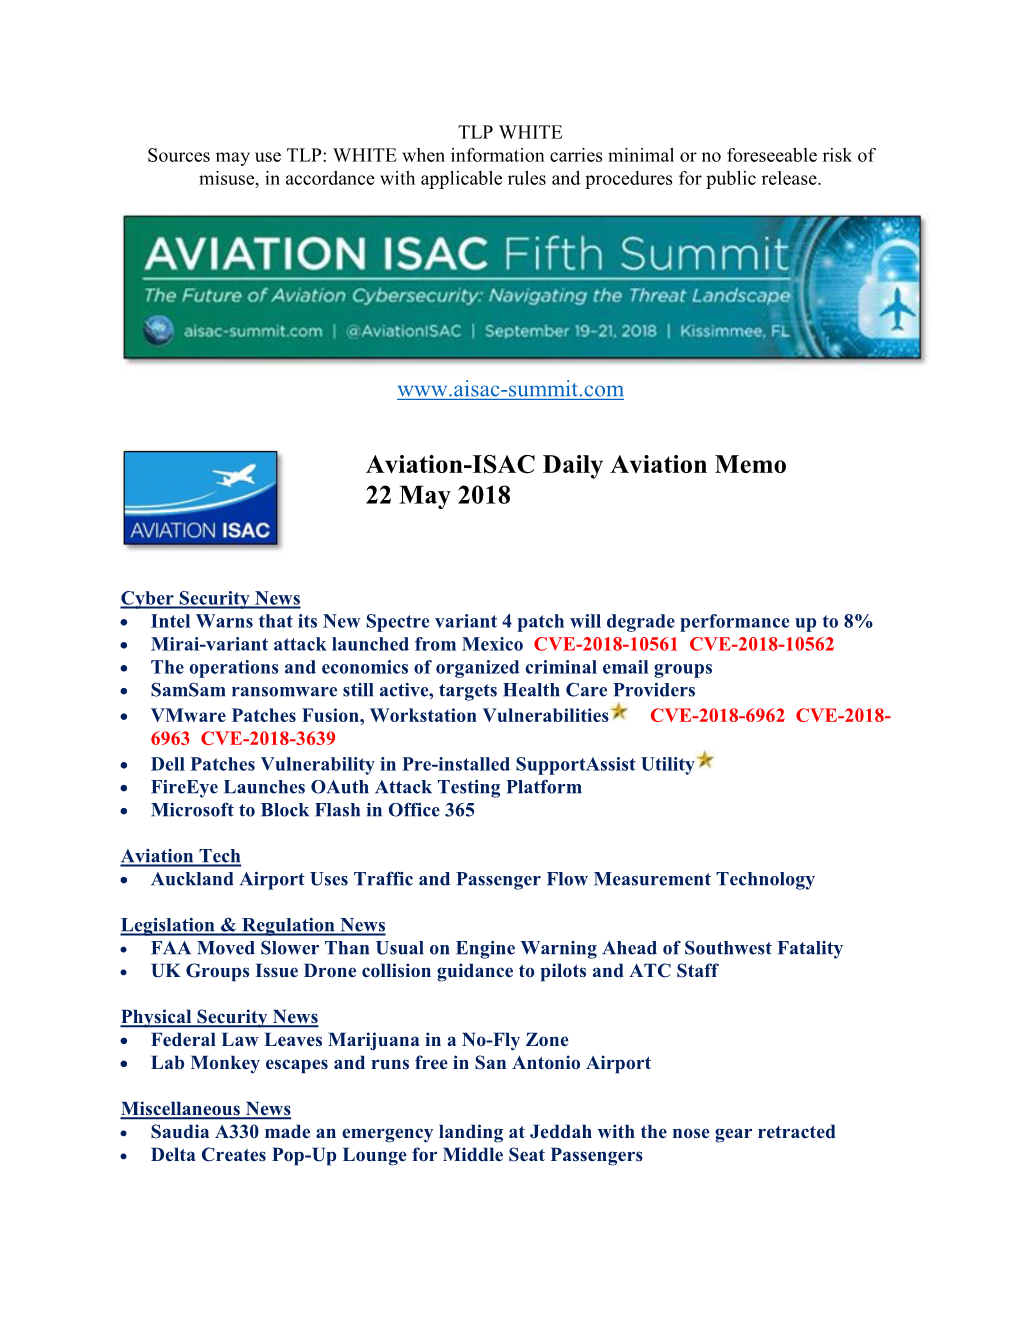 Aviation-ISAC Daily Aviation Memo 22 May 2018